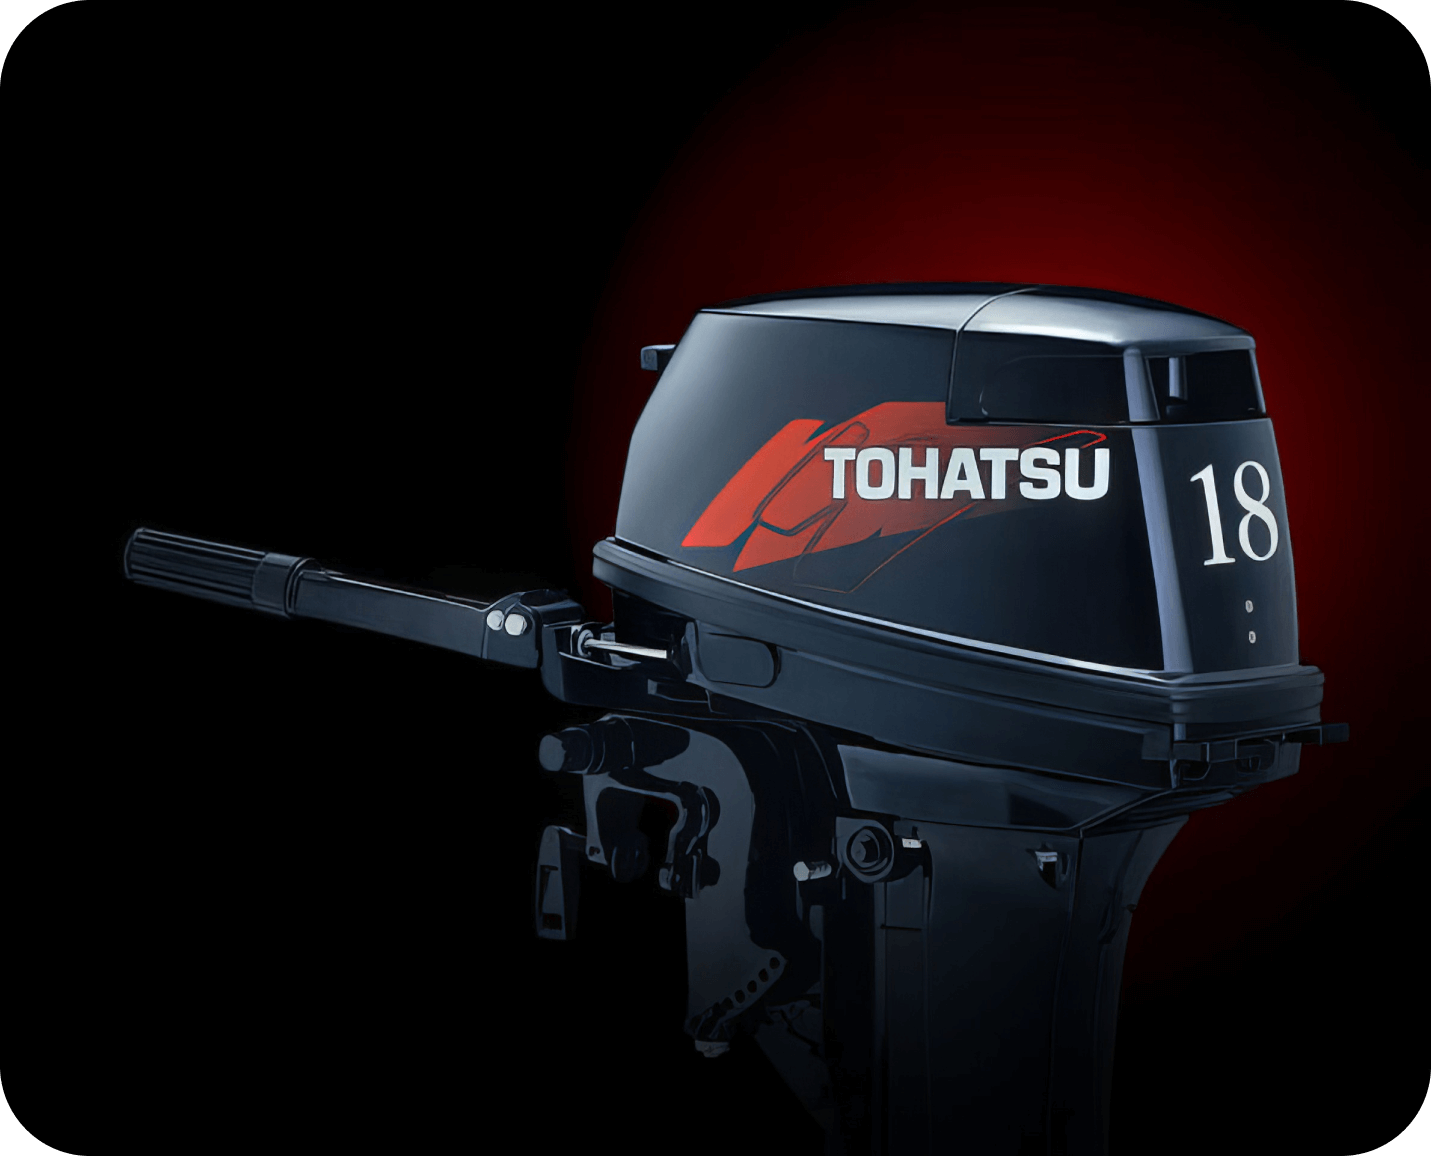 Tohatsu 9 9 купить. Лодочный мотор Tohatsu 18. Лодочный мотор Tohatsu m 18e2 s. Tohatsu m 18 e2 s. Tohatsu 9.9 и 18.